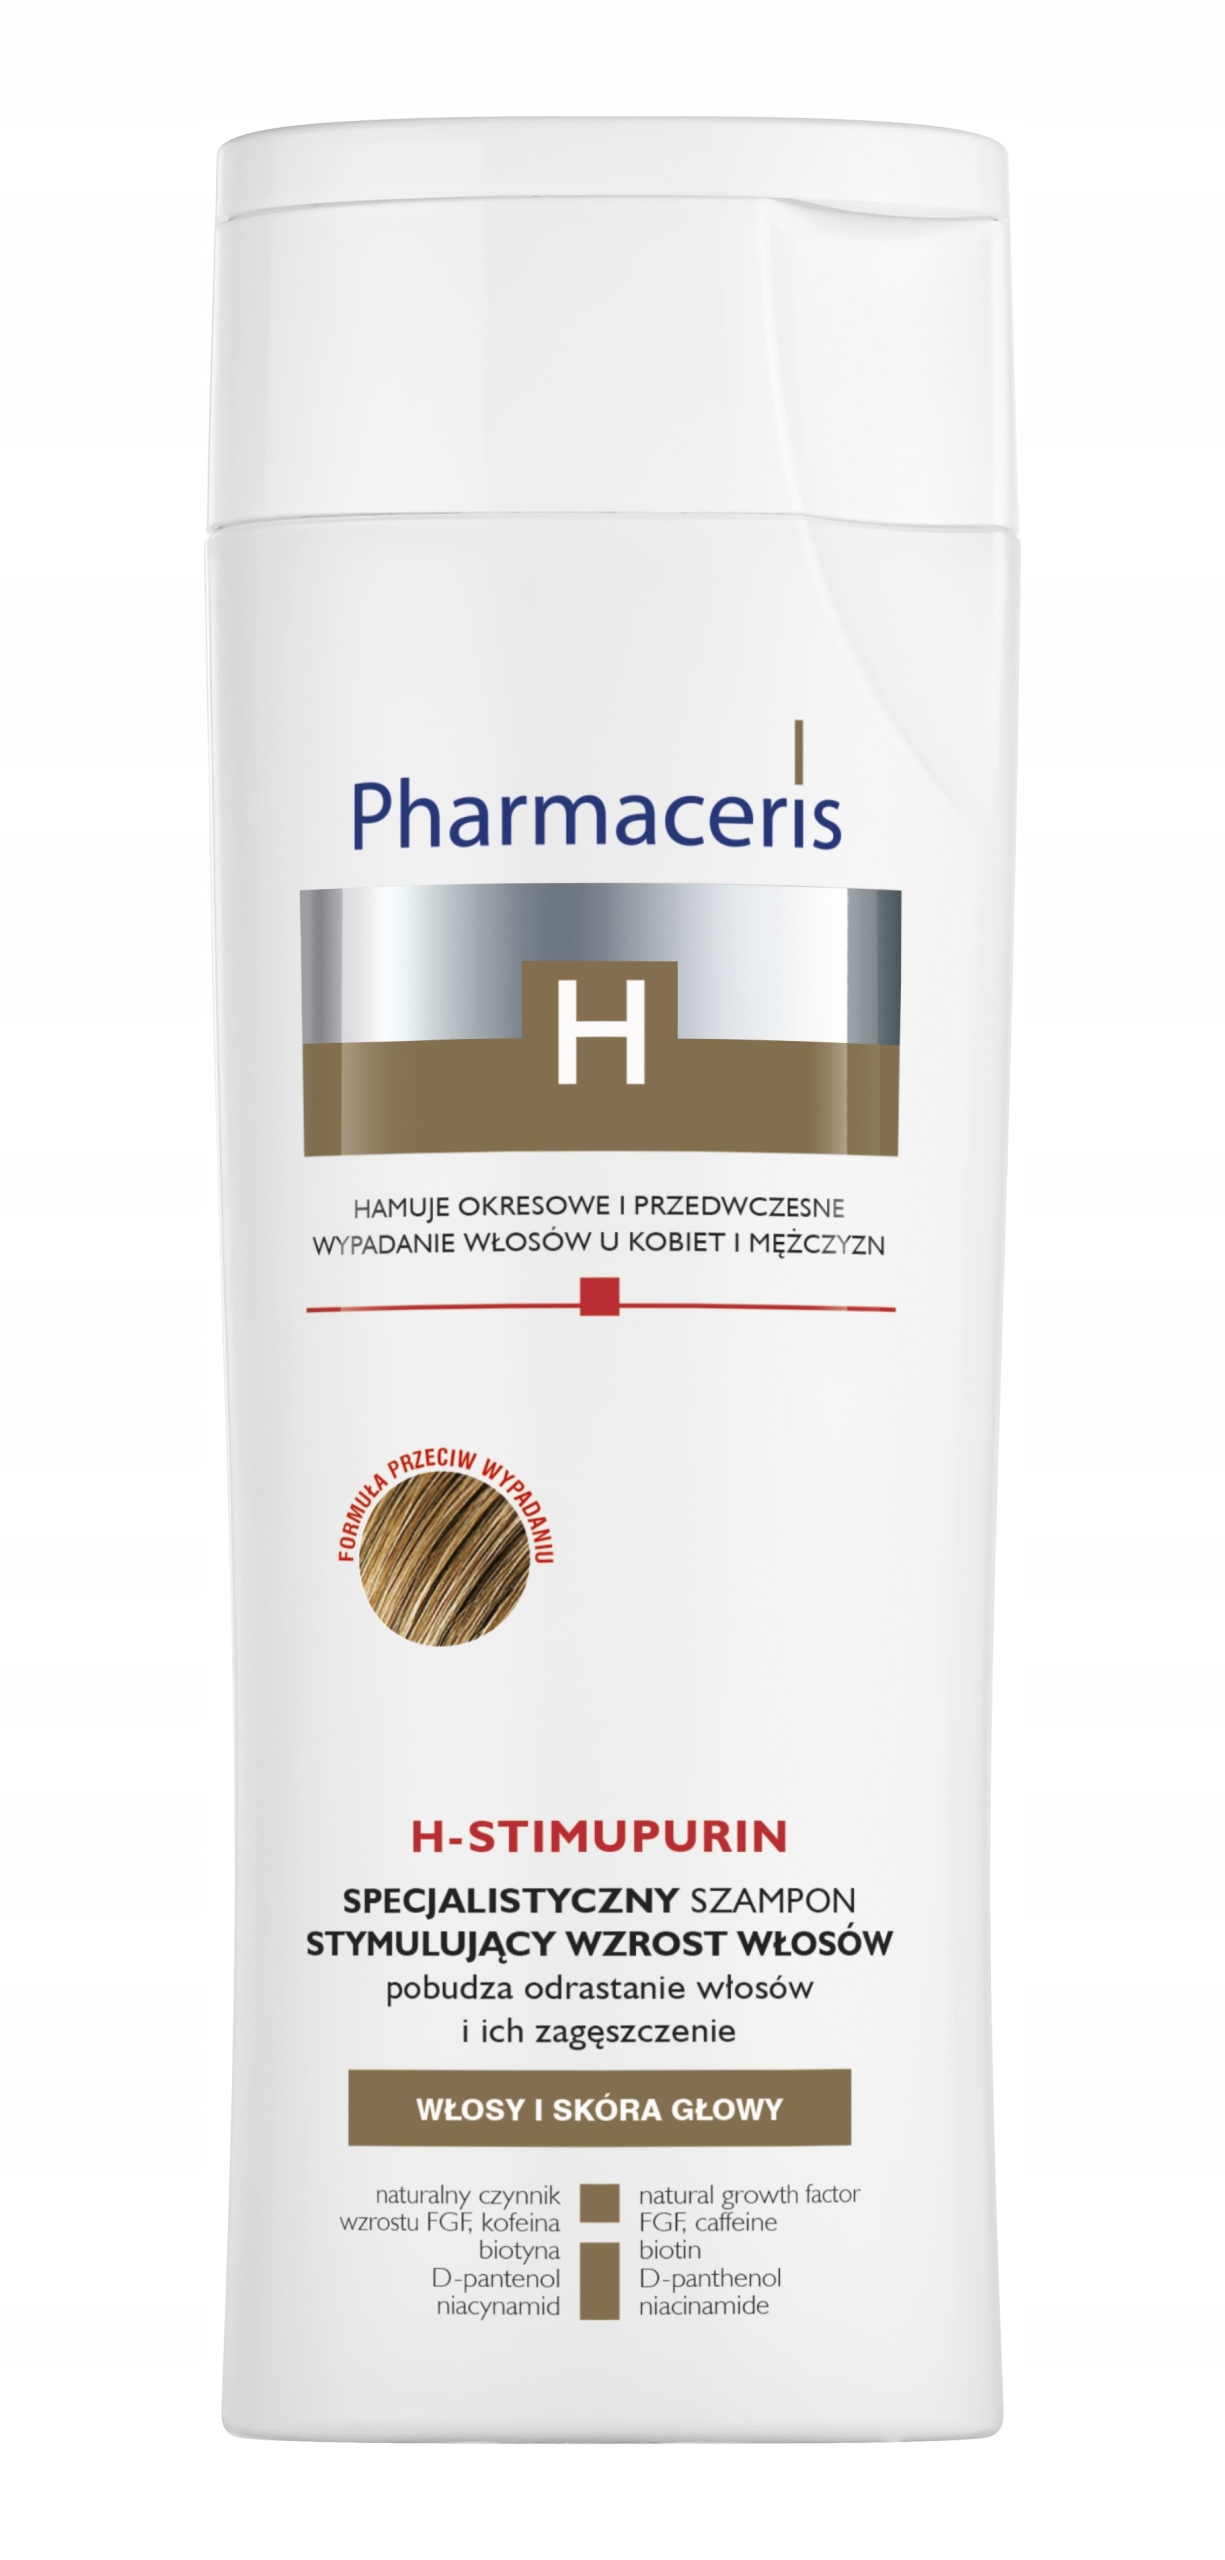 specjalistyczny szampon stymulujący wzrost włosów h-stimupurin allegro